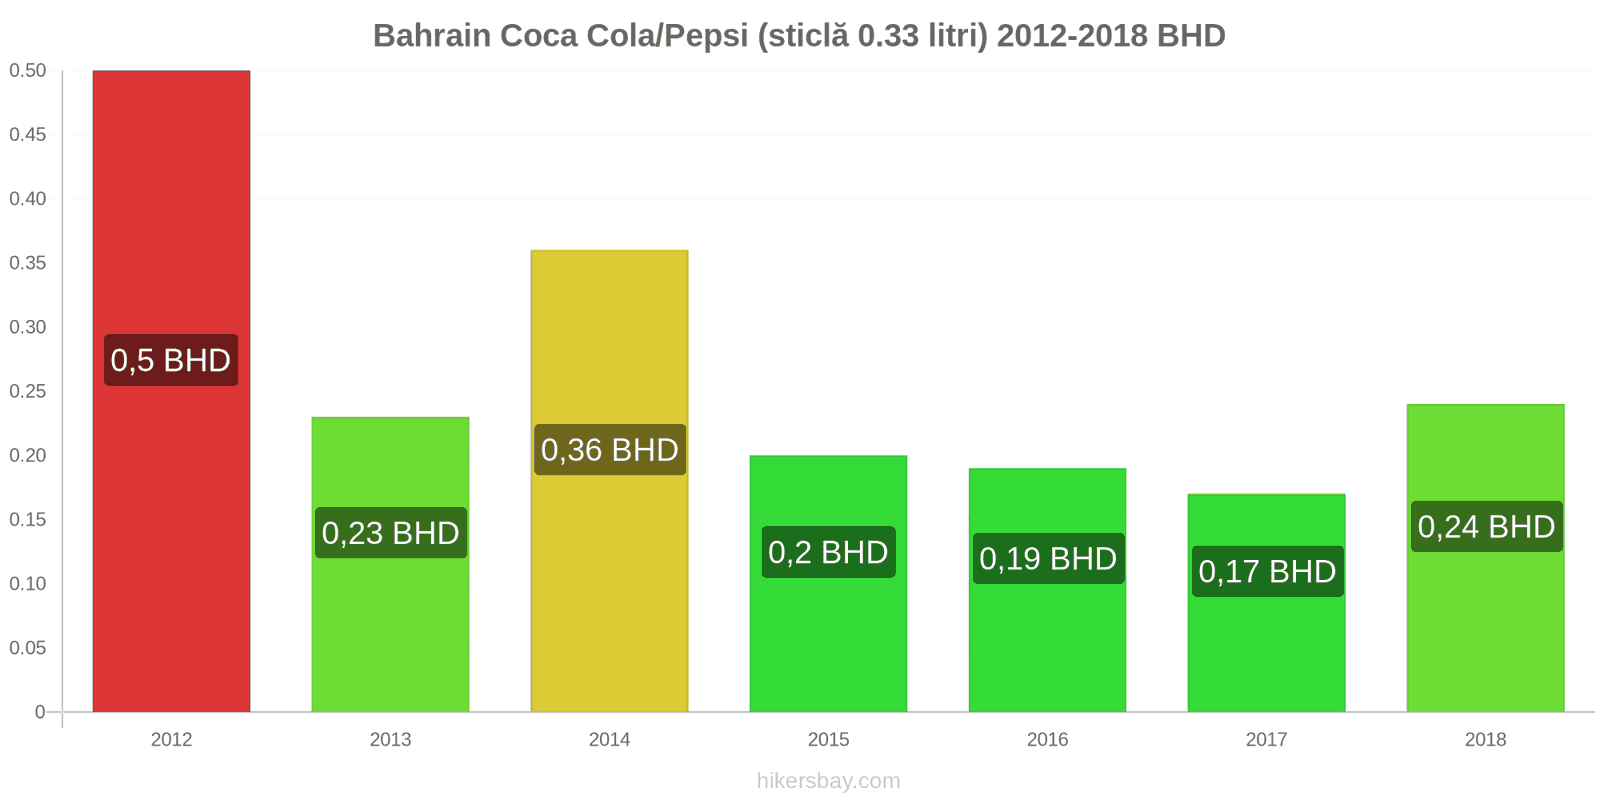 Bahrain schimbări de prețuri Coca-Cola/Pepsi (sticlă de 0.33 litri) hikersbay.com